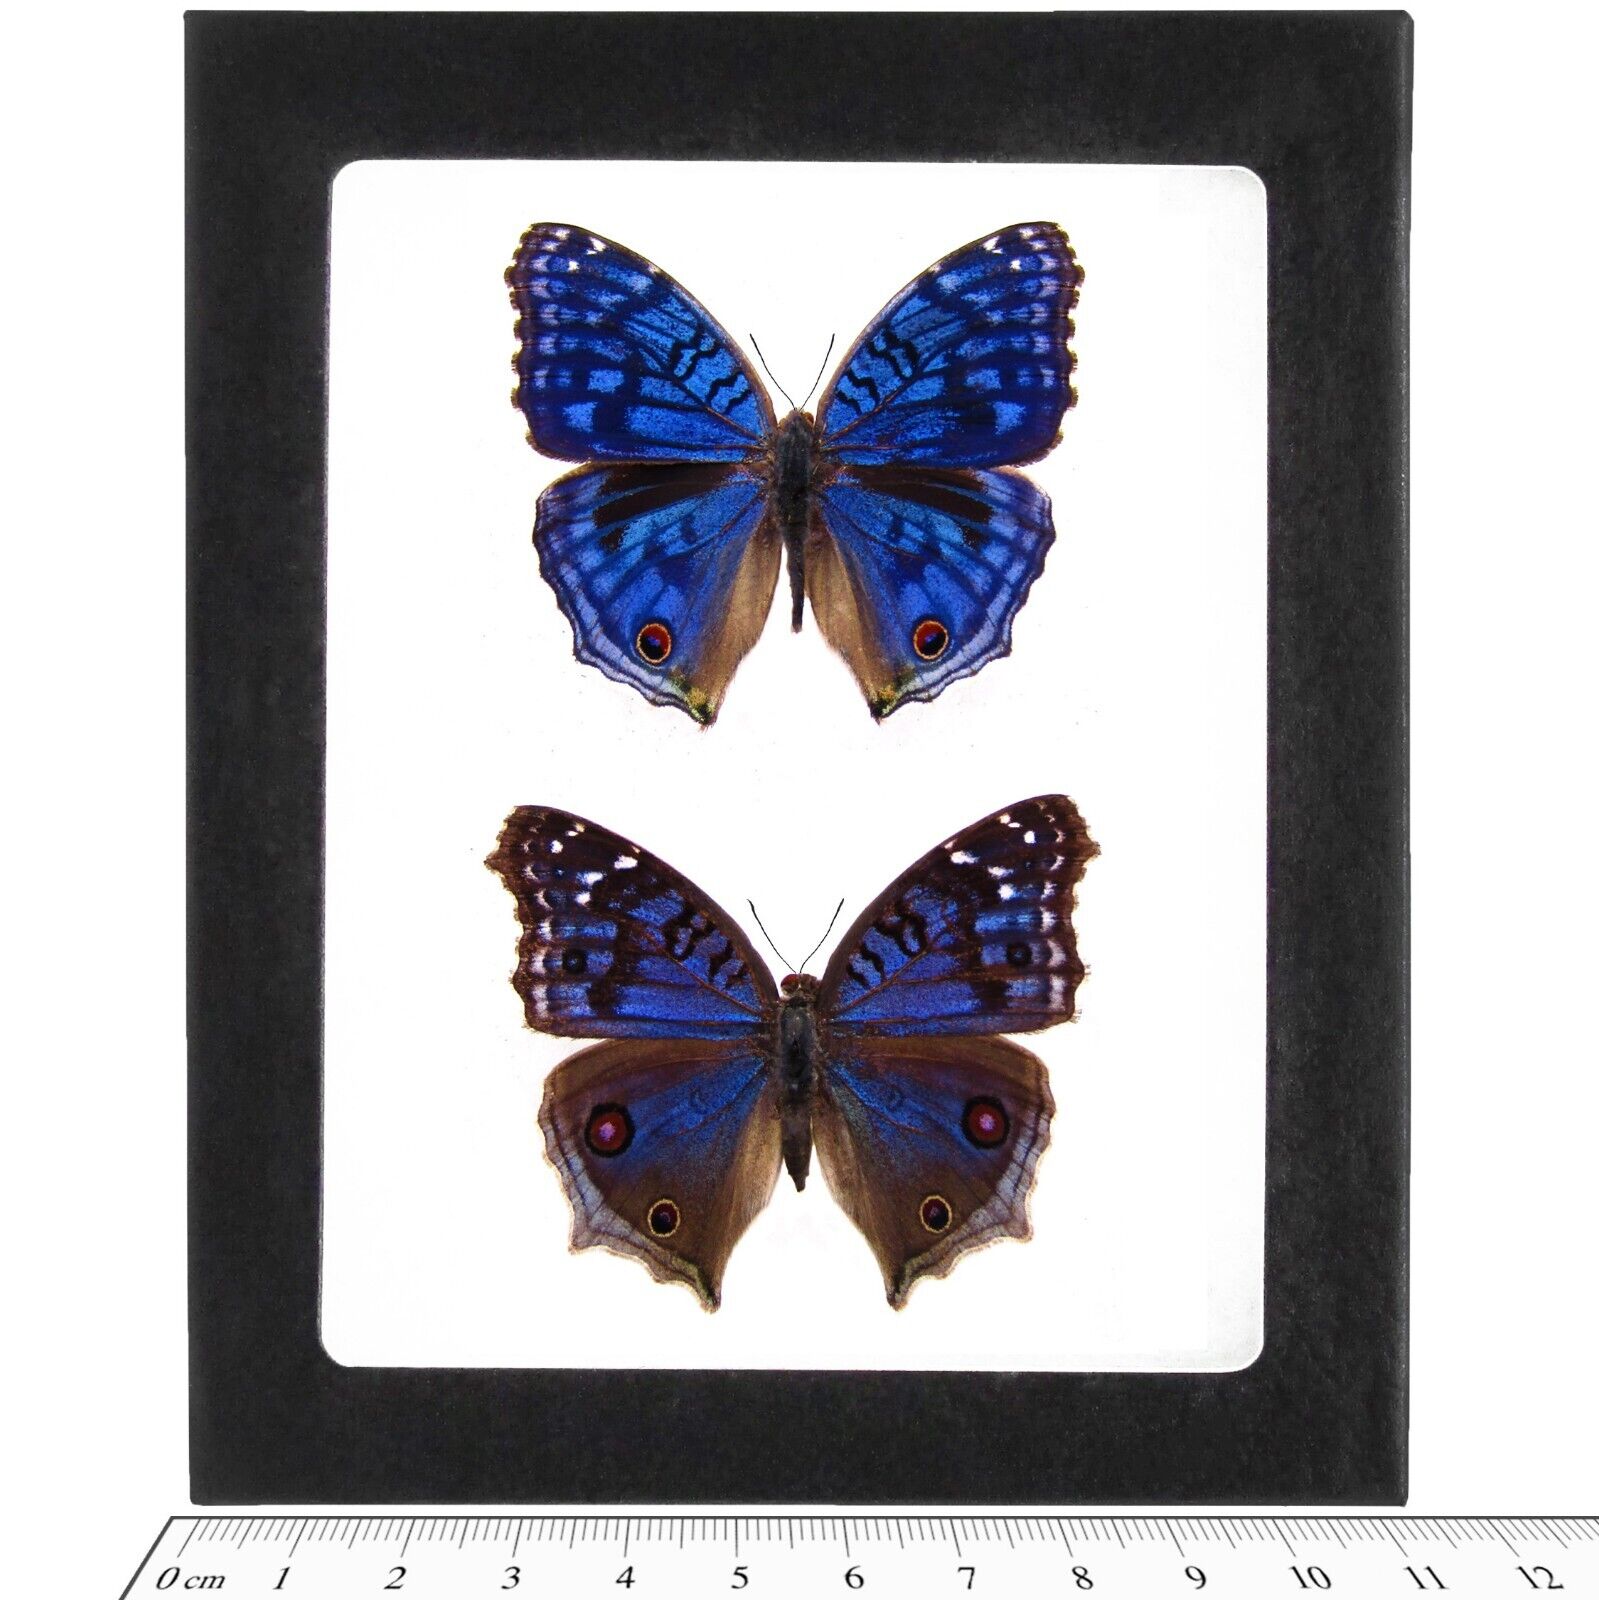 Precis rhadama PAIR male female blue butterfly Madagascar FRAMED